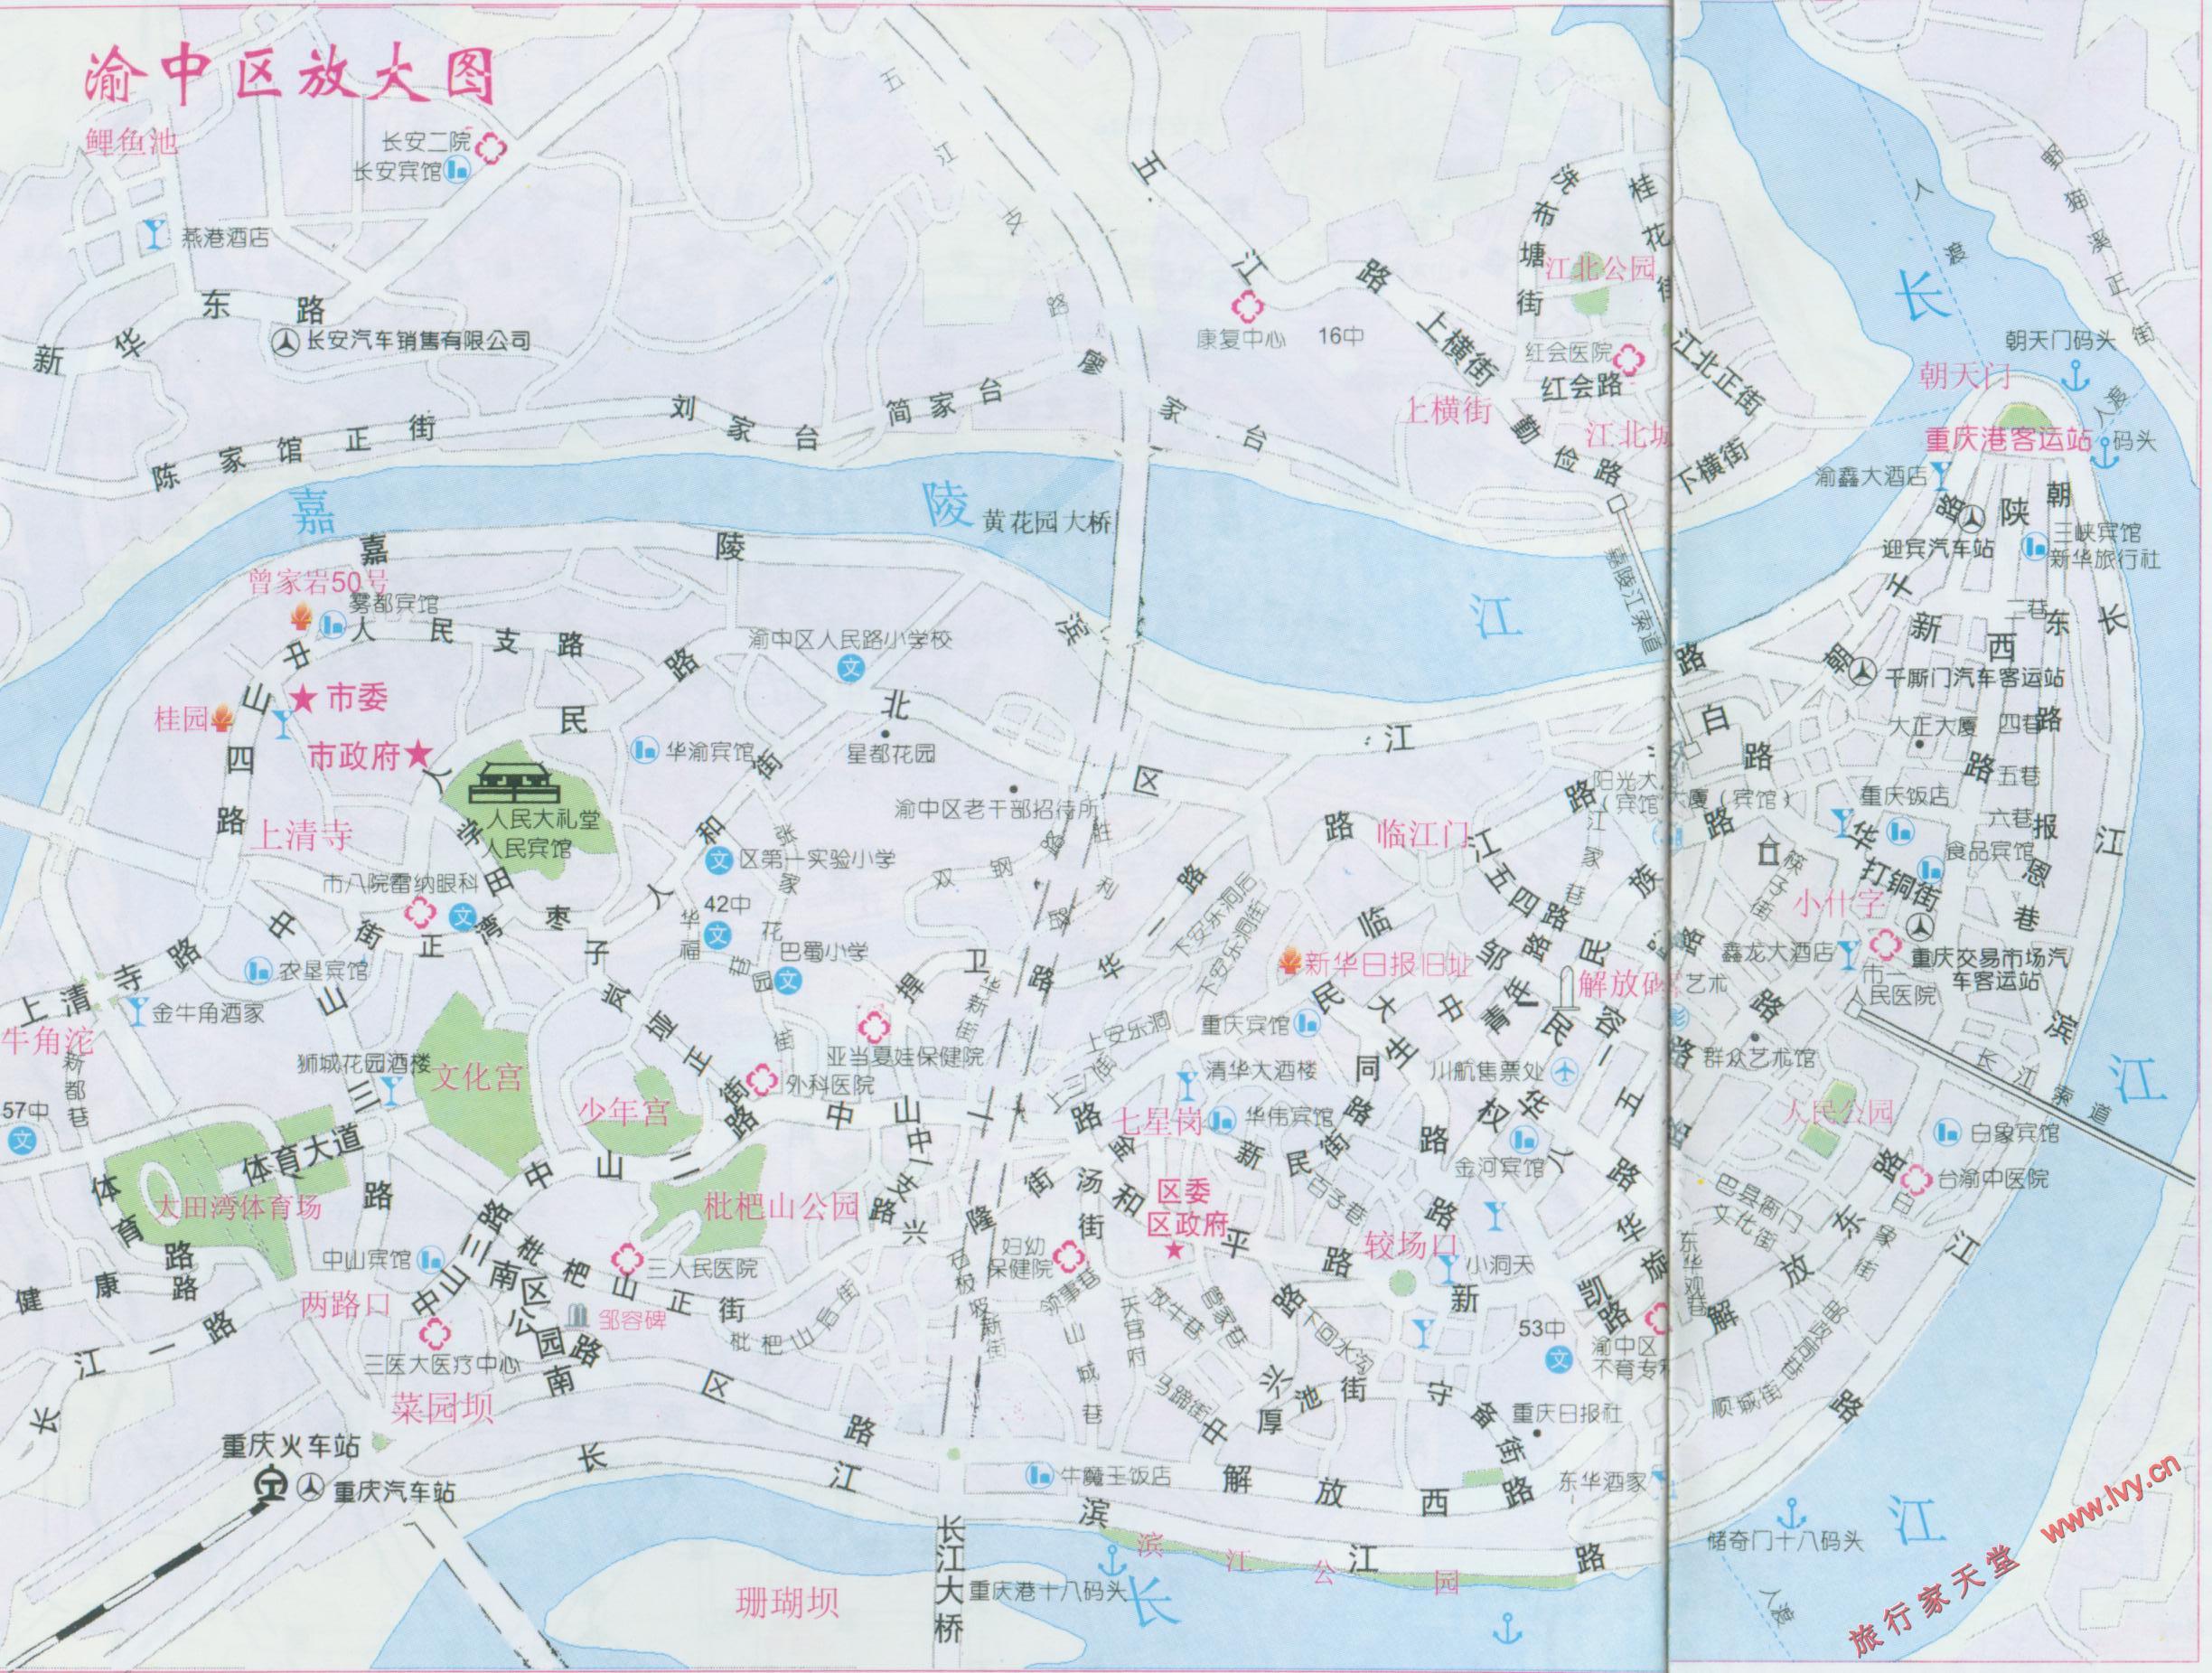 2000重庆渝中区街道地图_重庆地图库图片